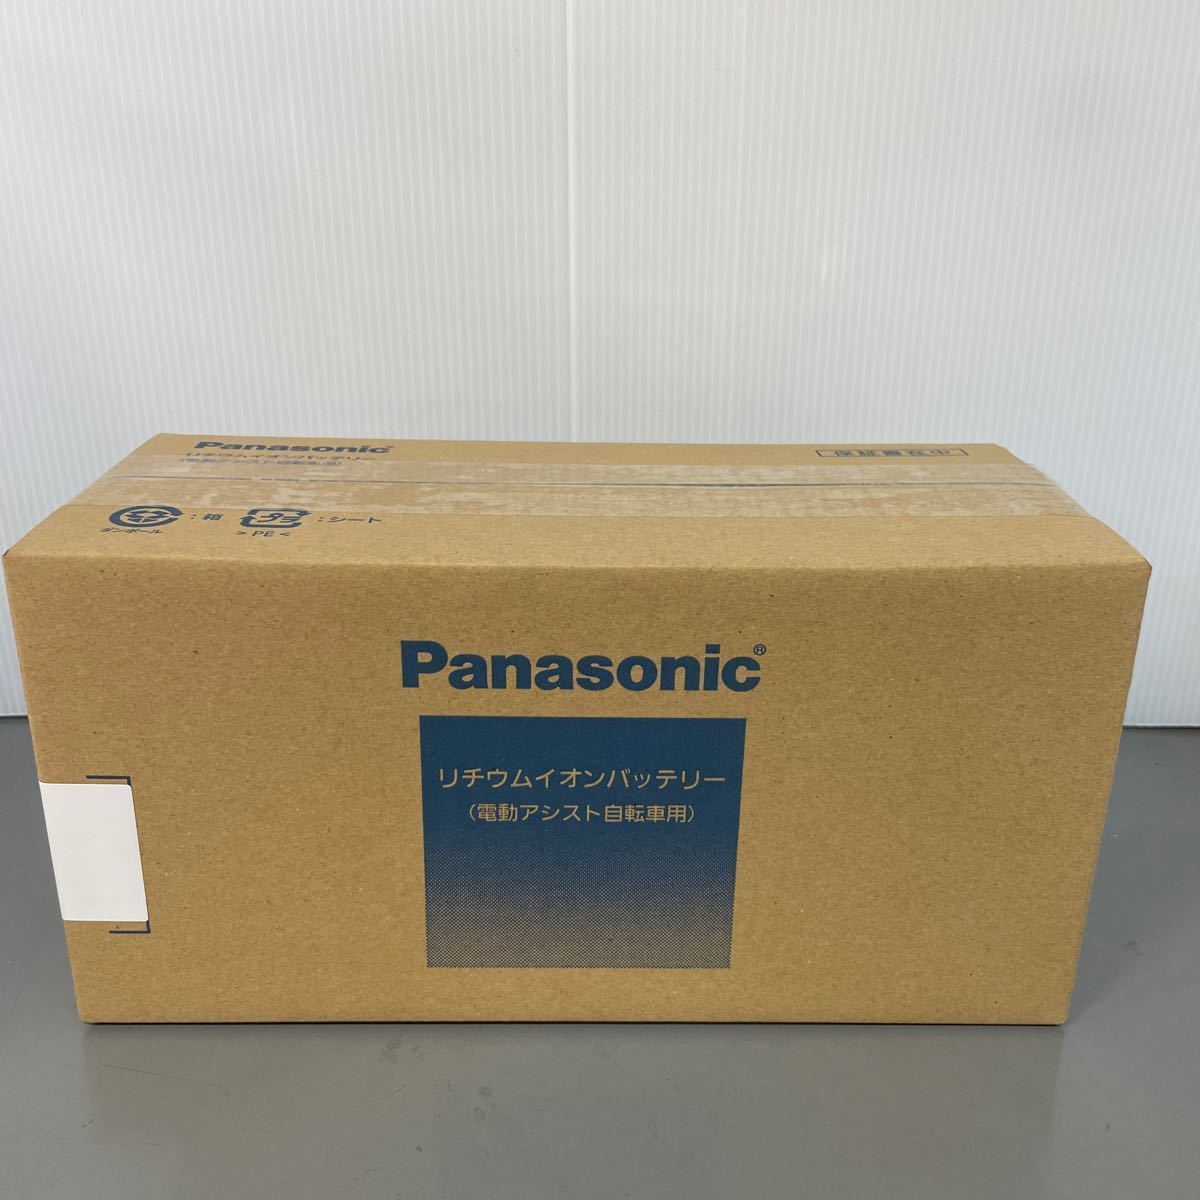 新品未開封 Panasonic パナソニック 電動アシスト自転車用リチウムイオンバッテリー NKY490B02B 6.6Ah